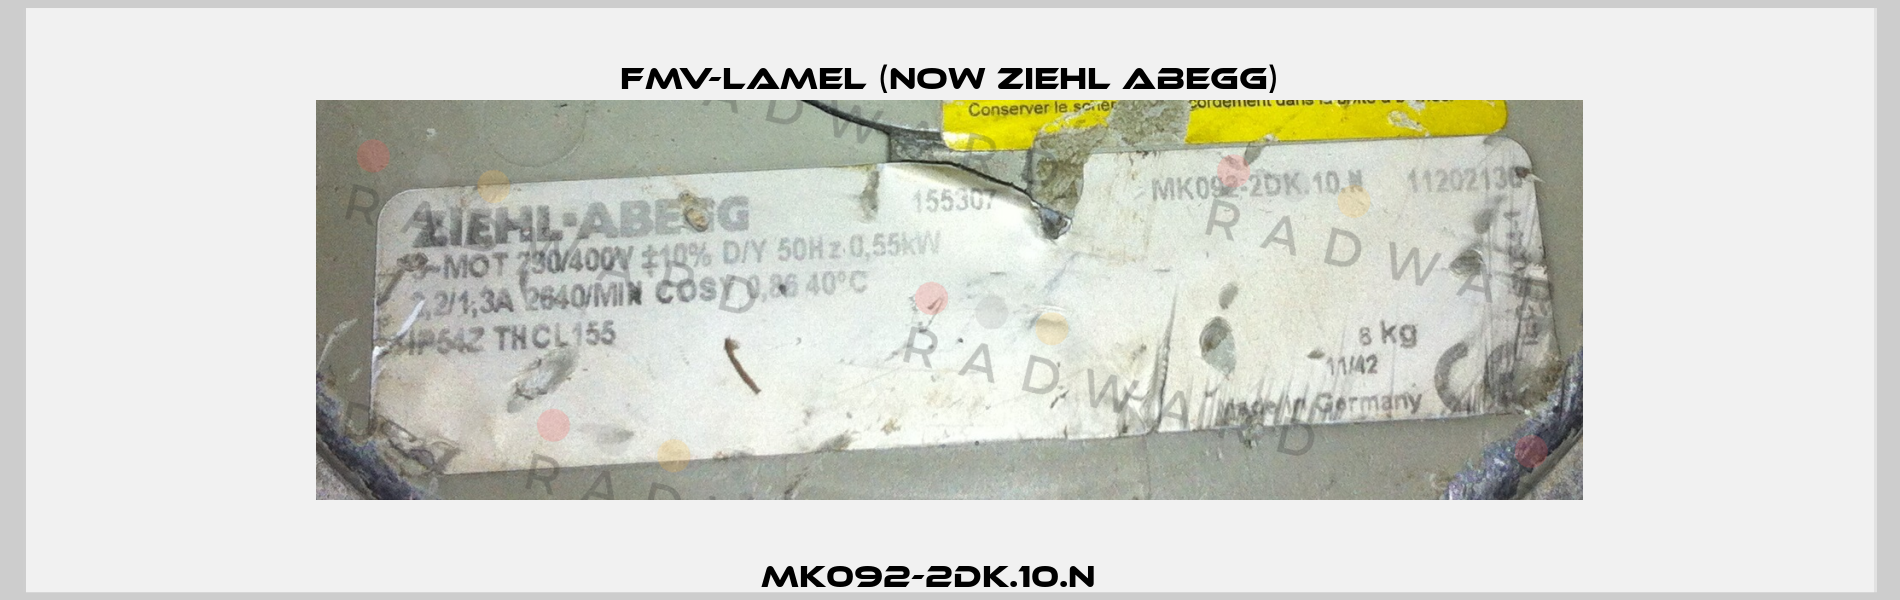 MK092-2DK.10.N     FMV-Lamel (now Ziehl Abegg)